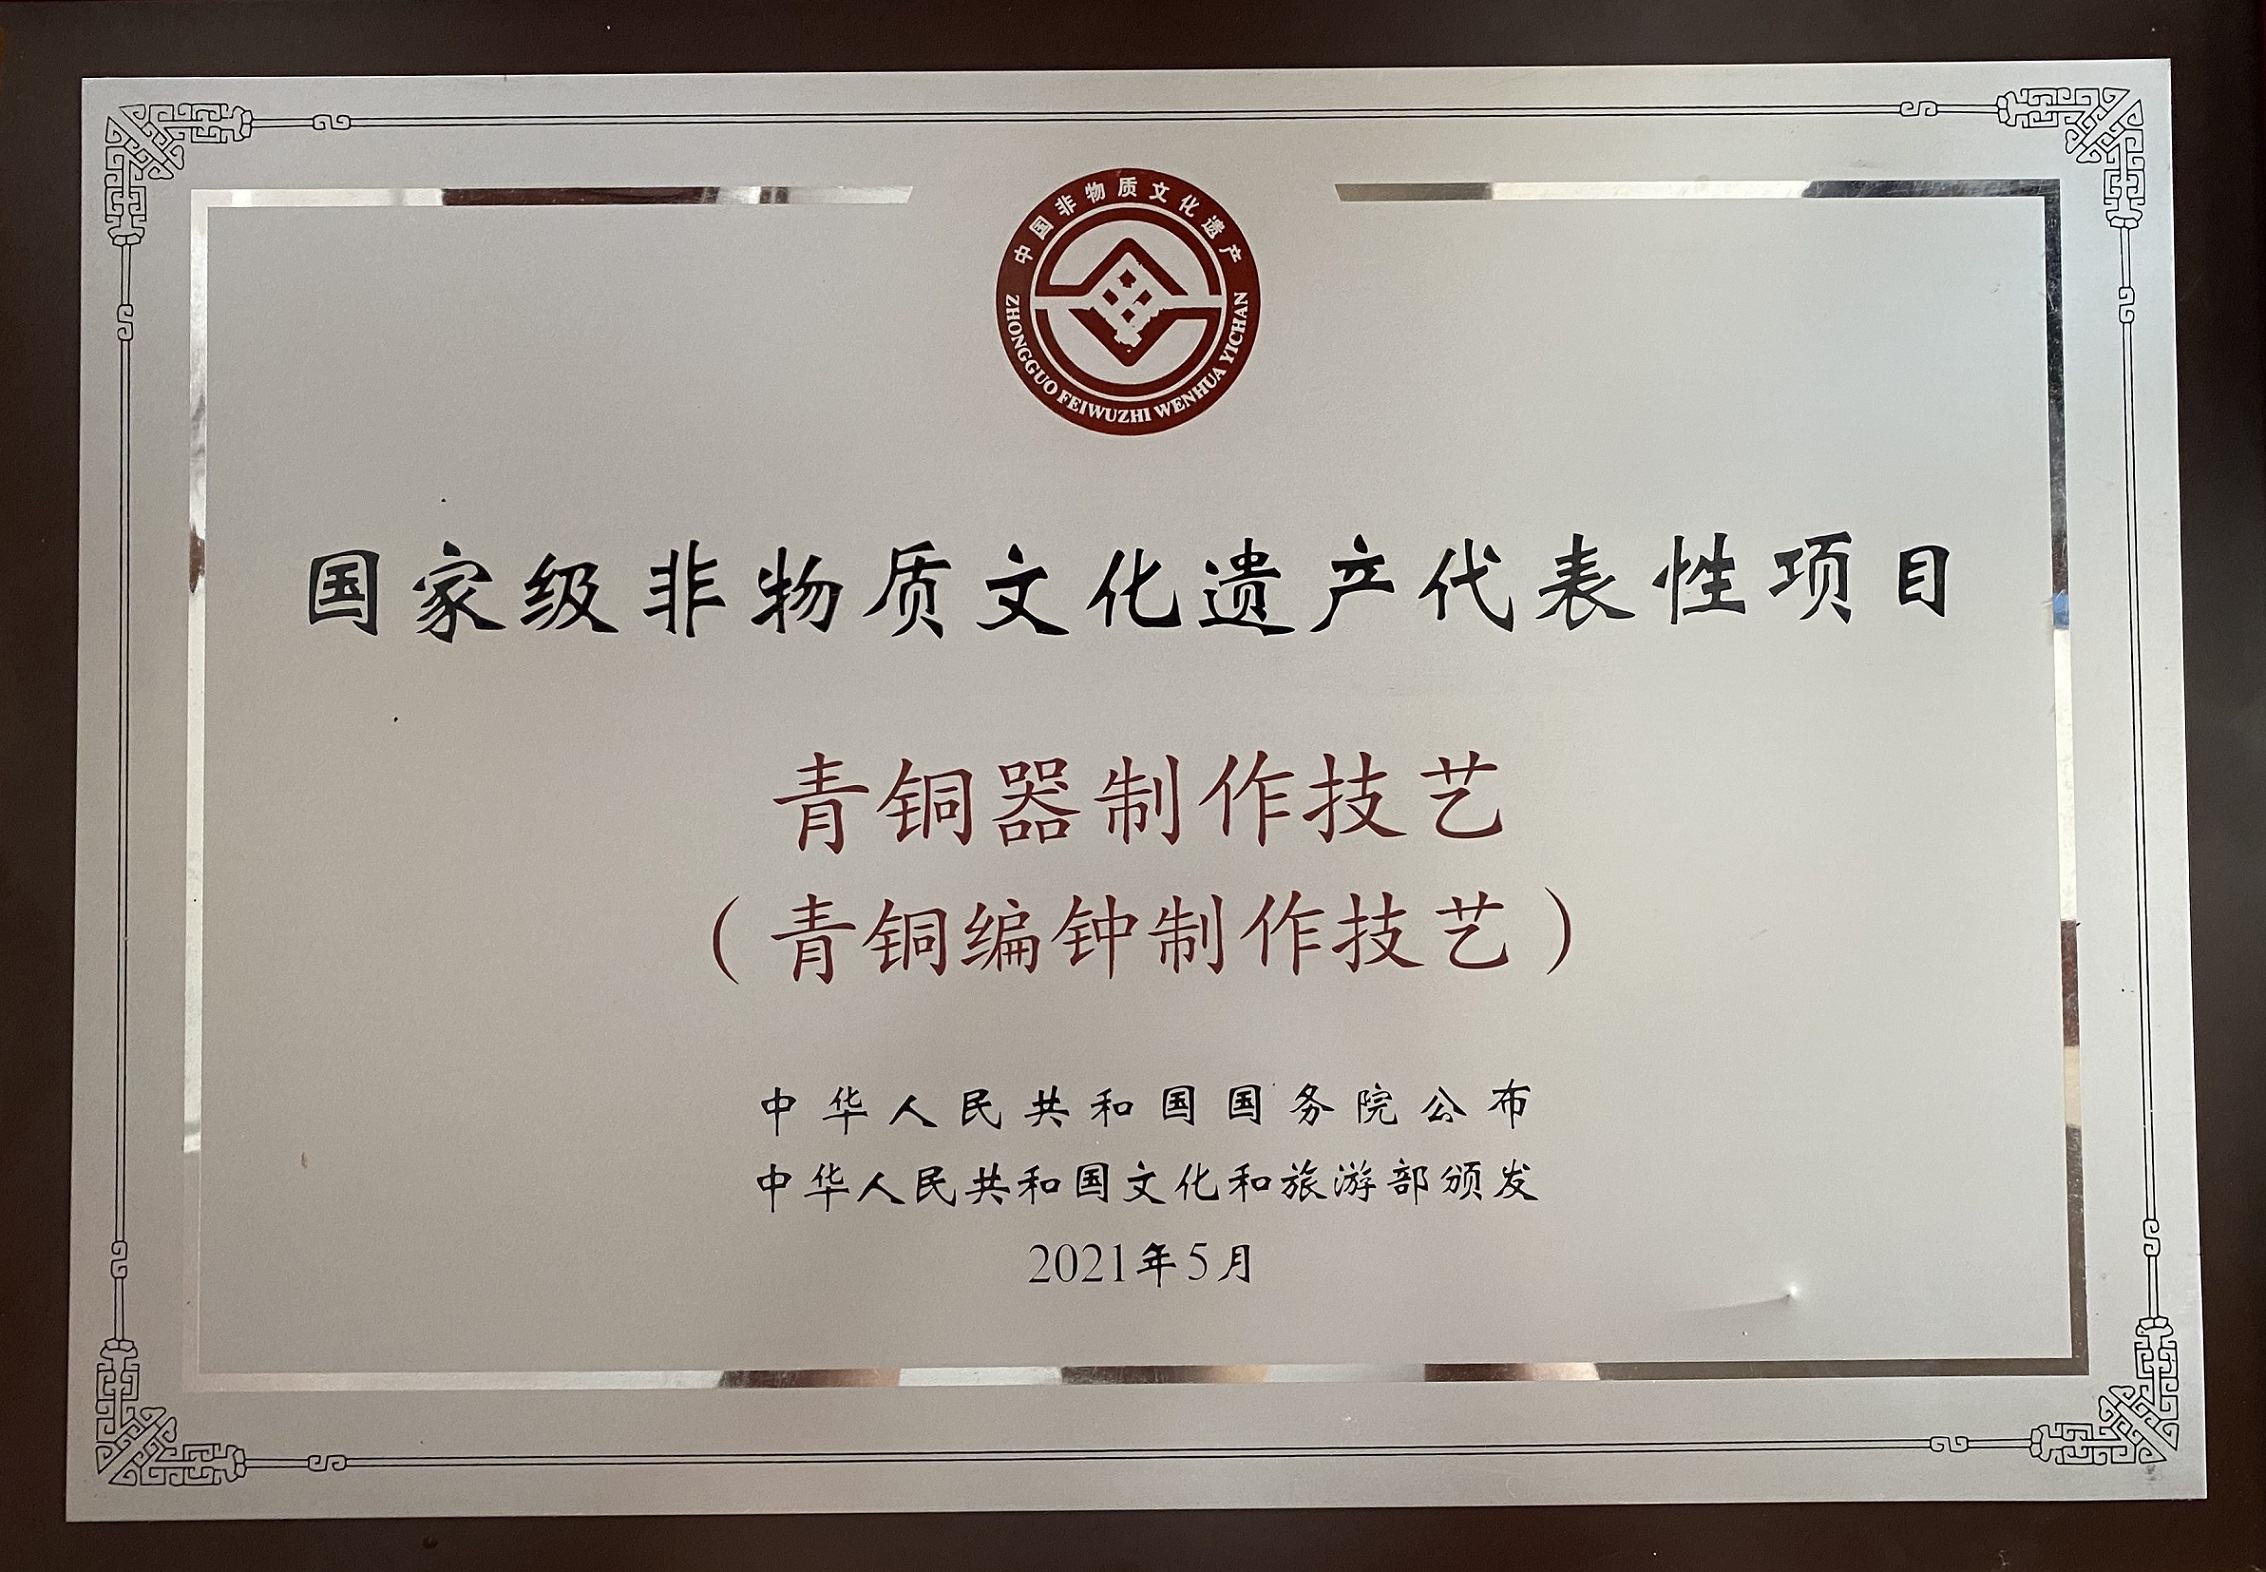 “青銅編鐘制作技藝”被國務院授予國家級非遺保護項目